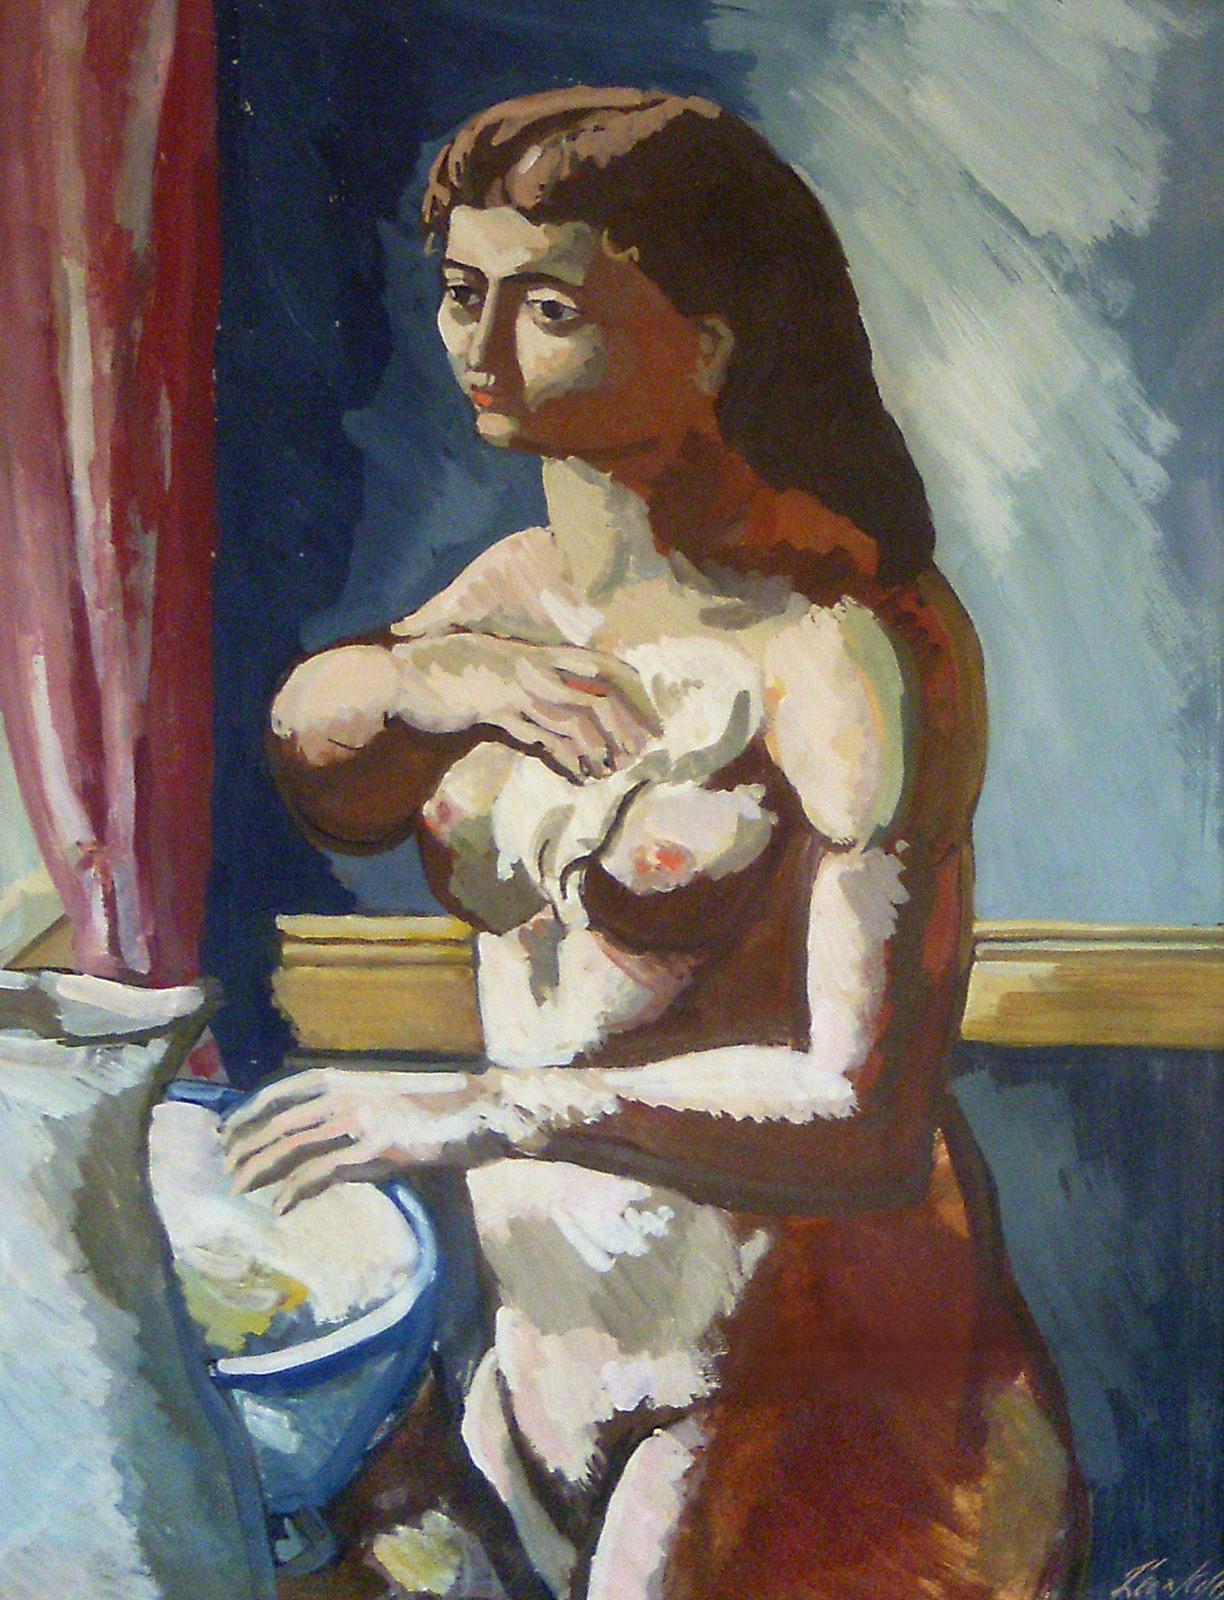 Frau am Basin, Porträt eines weiblichen Aktes im Picasso-Stil, amerikanische Moderne